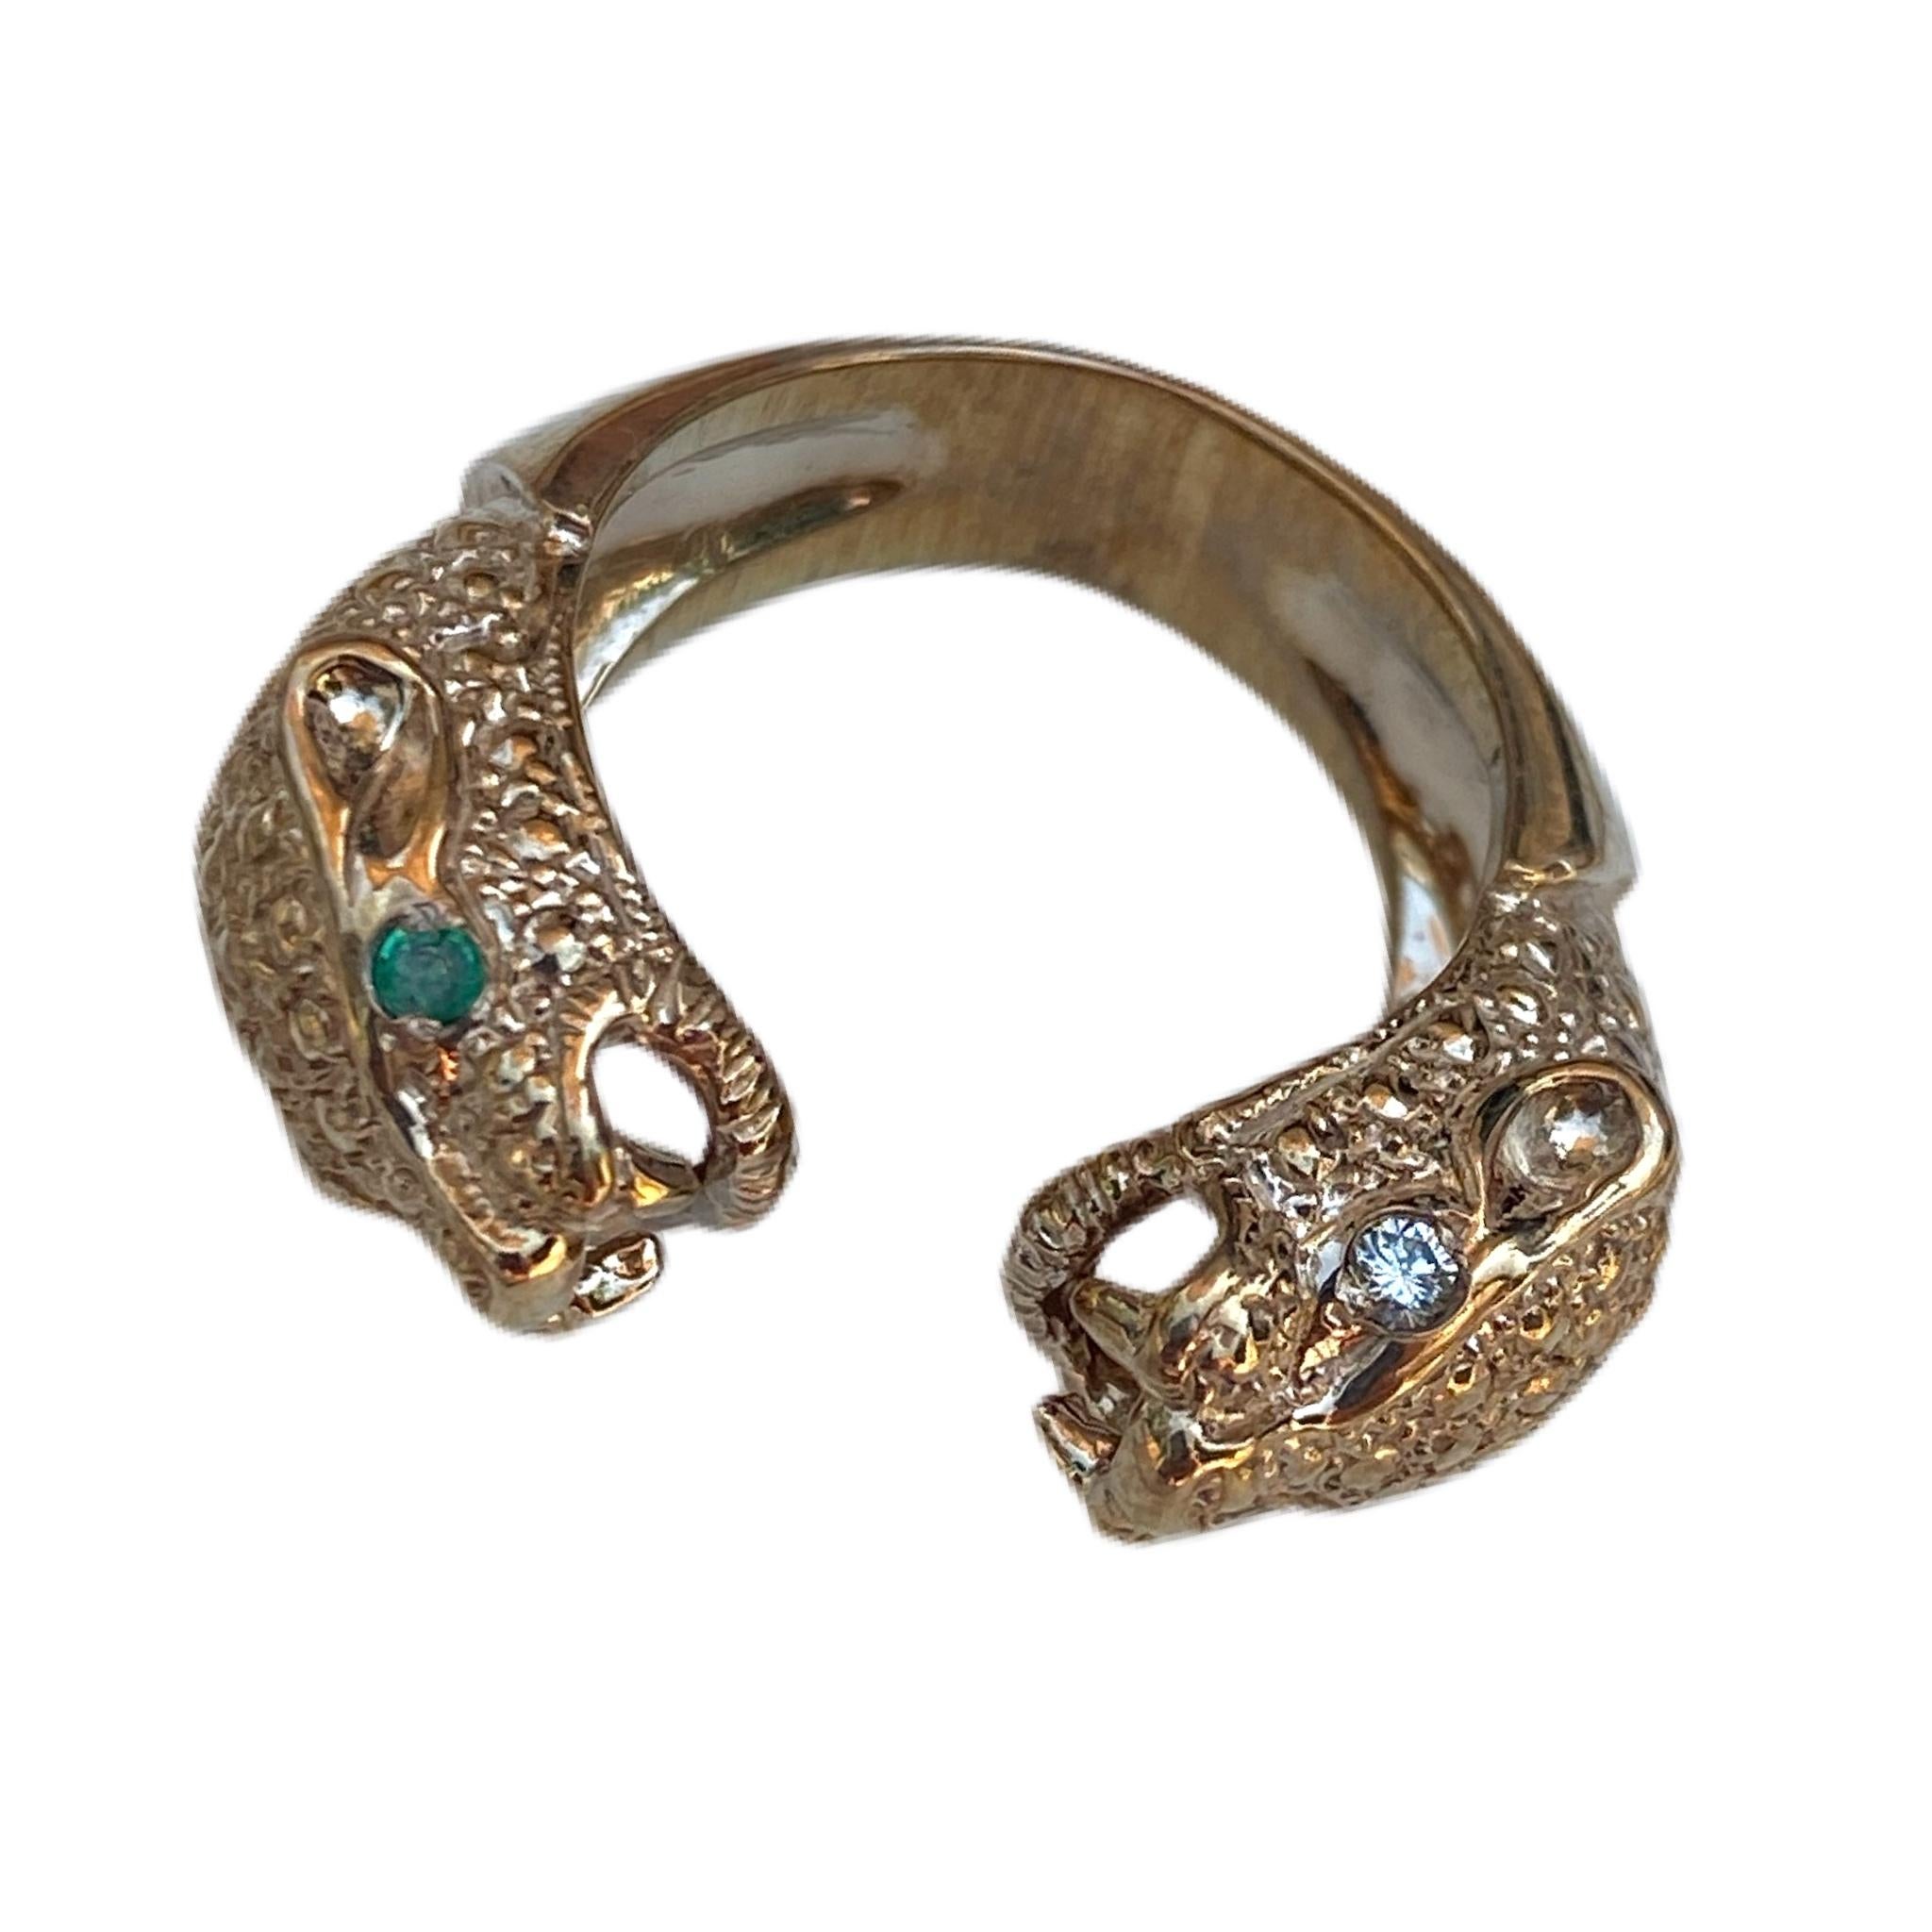 2 pcs Emerald 2 pcs White Diamond 14 k Gold Jaguar Ring  Animal Resizable J Dauphin
J DAUPHIN Ring 